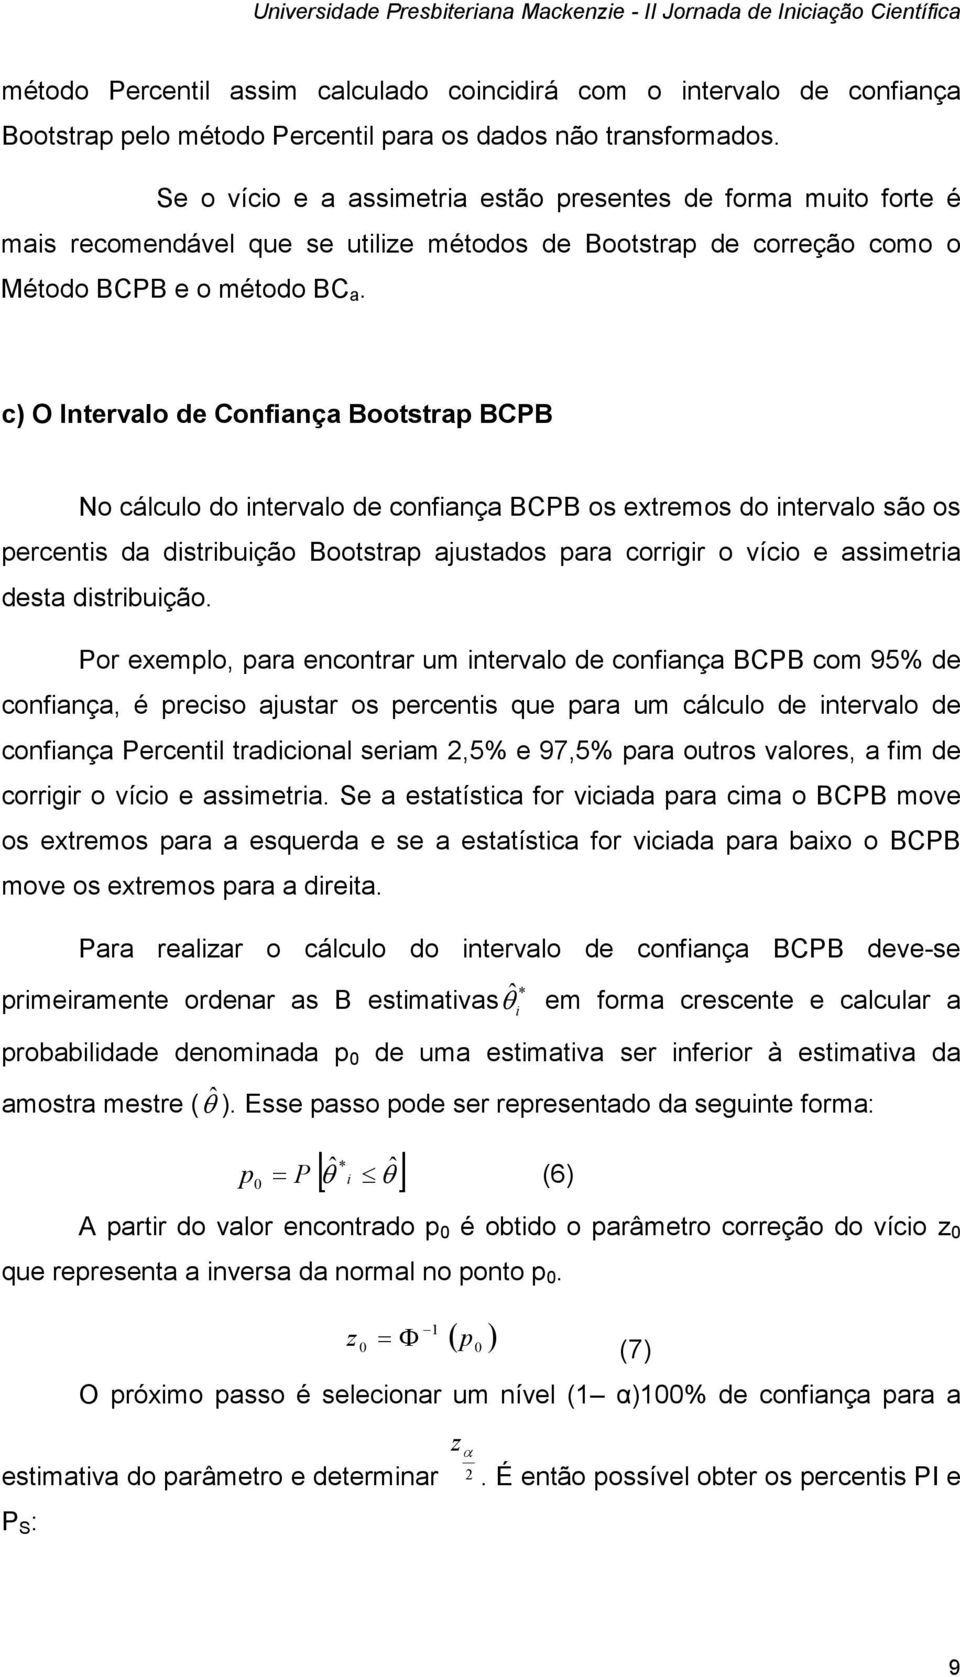 c) O Intervalo de Confiança Bootstrap BCPB No cálculo do intervalo de confiança BCPB os extremos do intervalo são os percentis da distribuição Bootstrap ajustados para corrigir o vício e assimetria